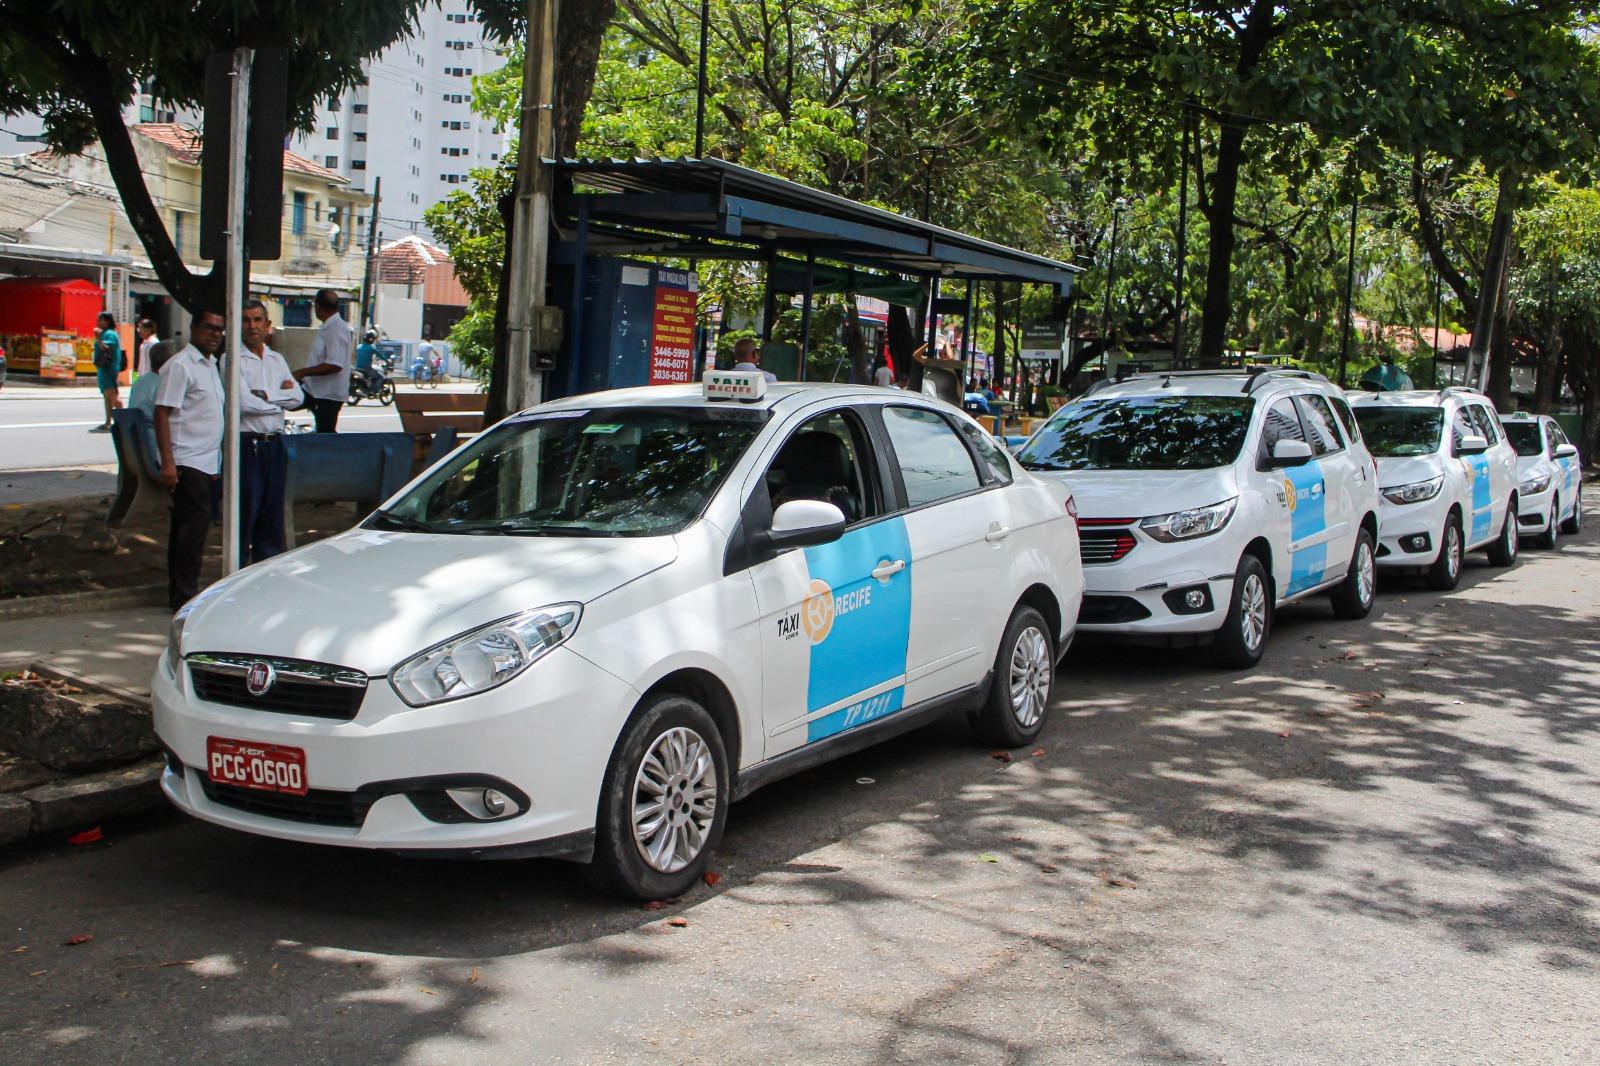 Táxis do Recife terão tarifa reajustada em abril